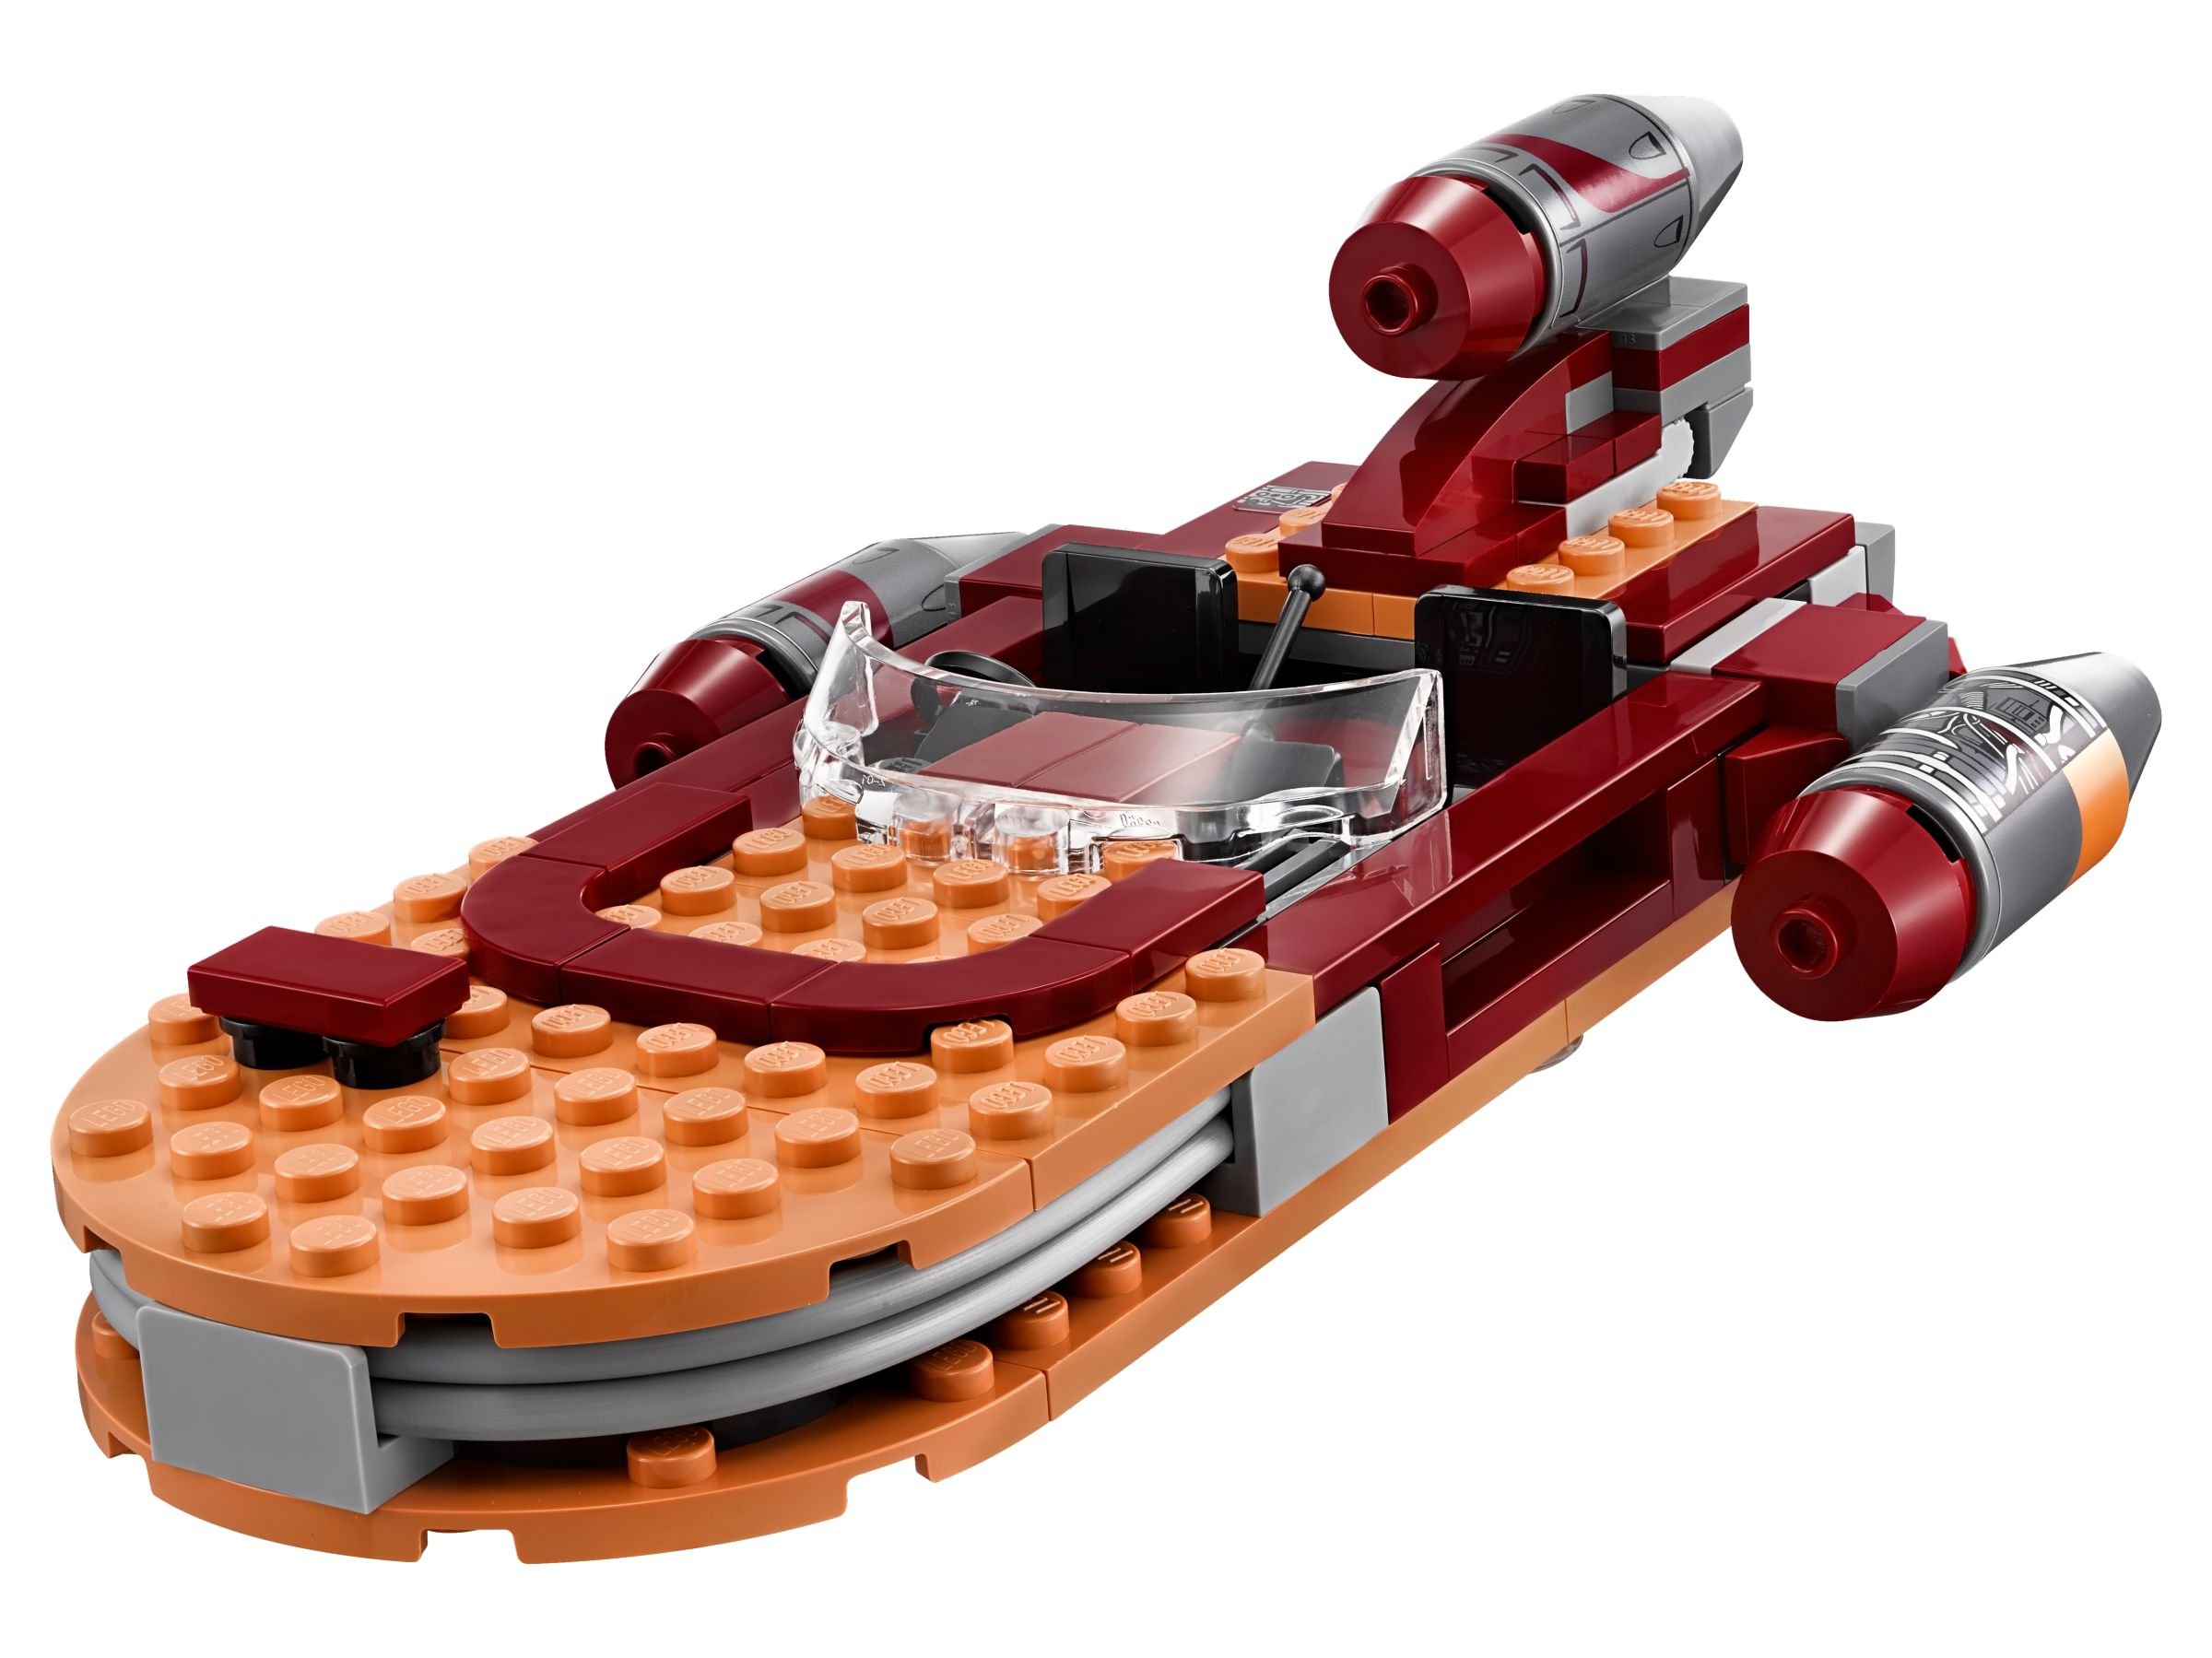 LEGO Star Wars 75173 Luke's Landspeeder™ LEGO_75173_alt2.jpg